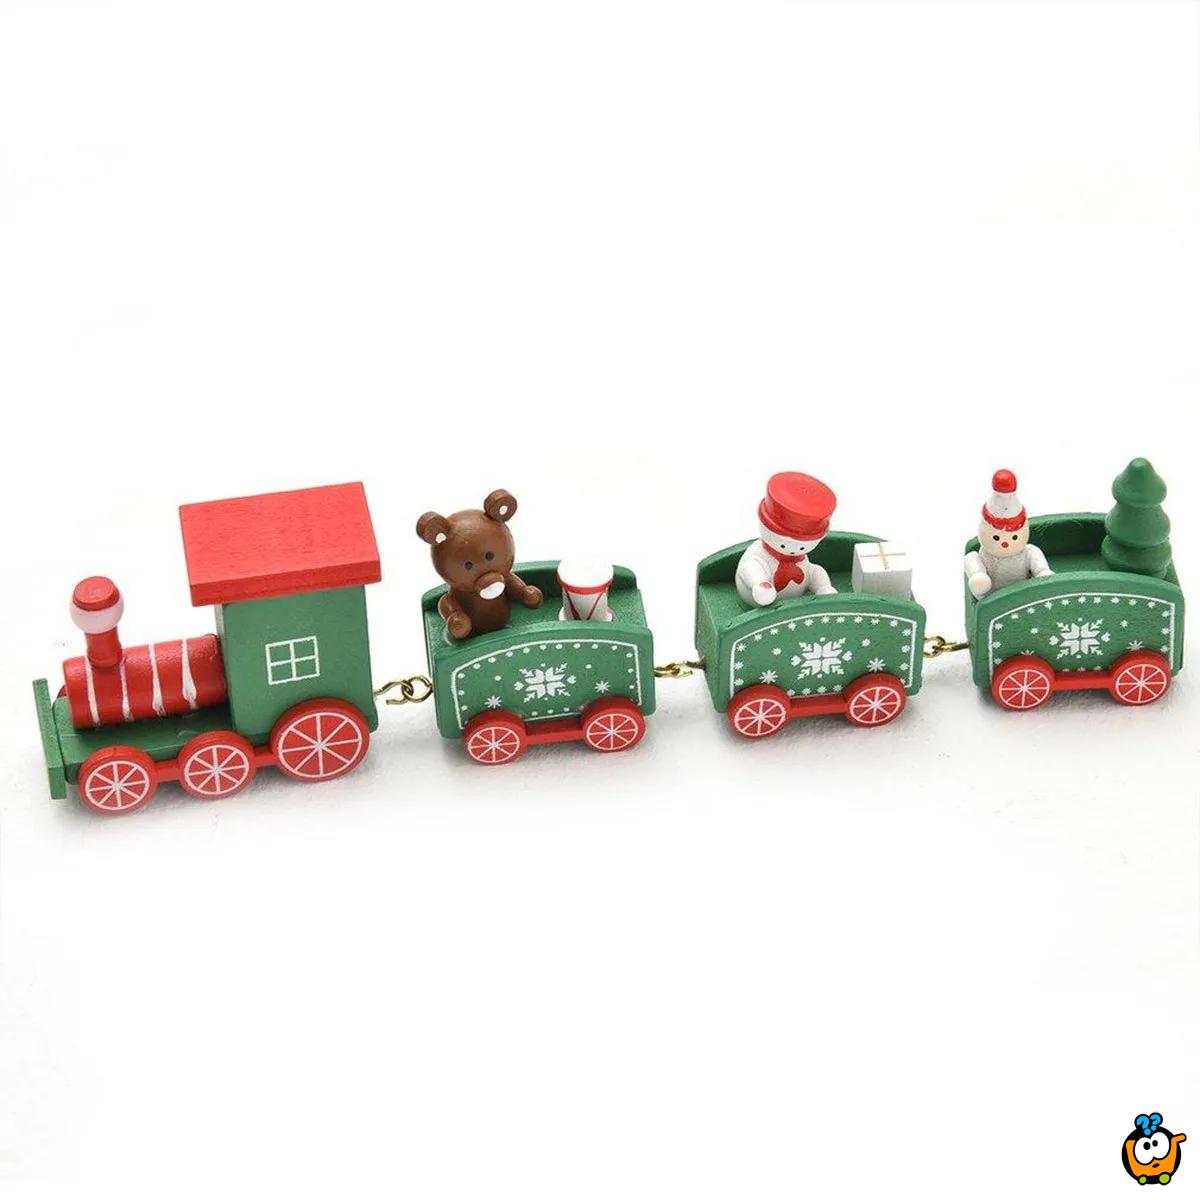 Praznični vozić - Lokomotiva sa vagonima u crvenoj boji